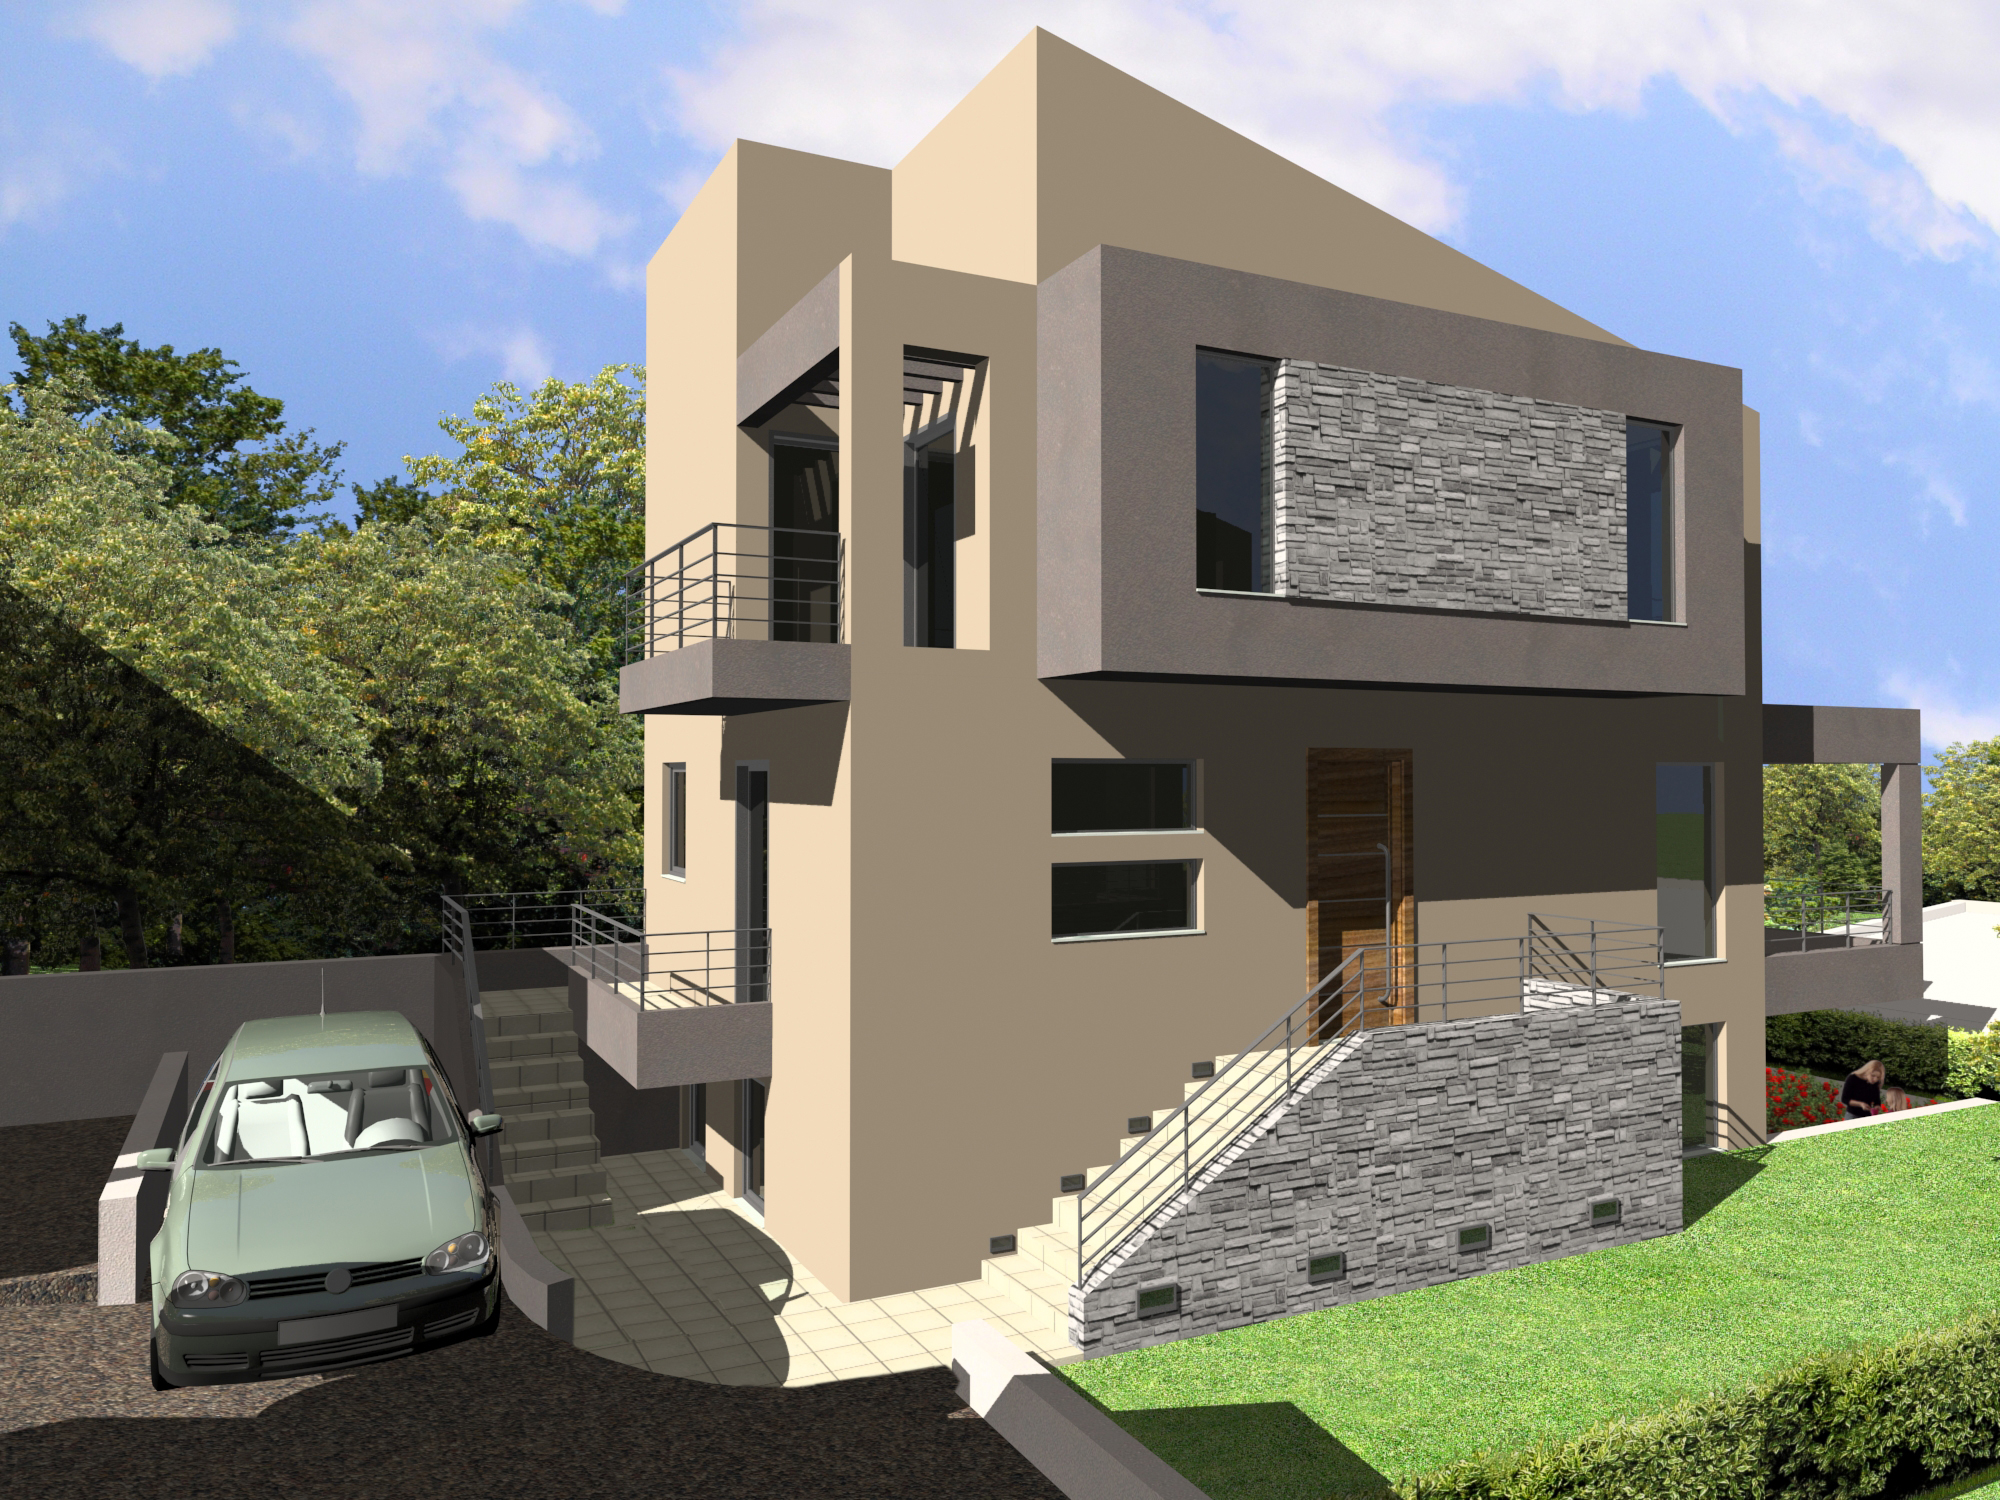 διώροφη μονοκατοικία προκατασκευασμένα σπίτια φτηνά με το κλειδί στο χέρι προσφορά αρχιτεκτονικά σχέδια σύμμεικτη μεταλλική κατασκευή 